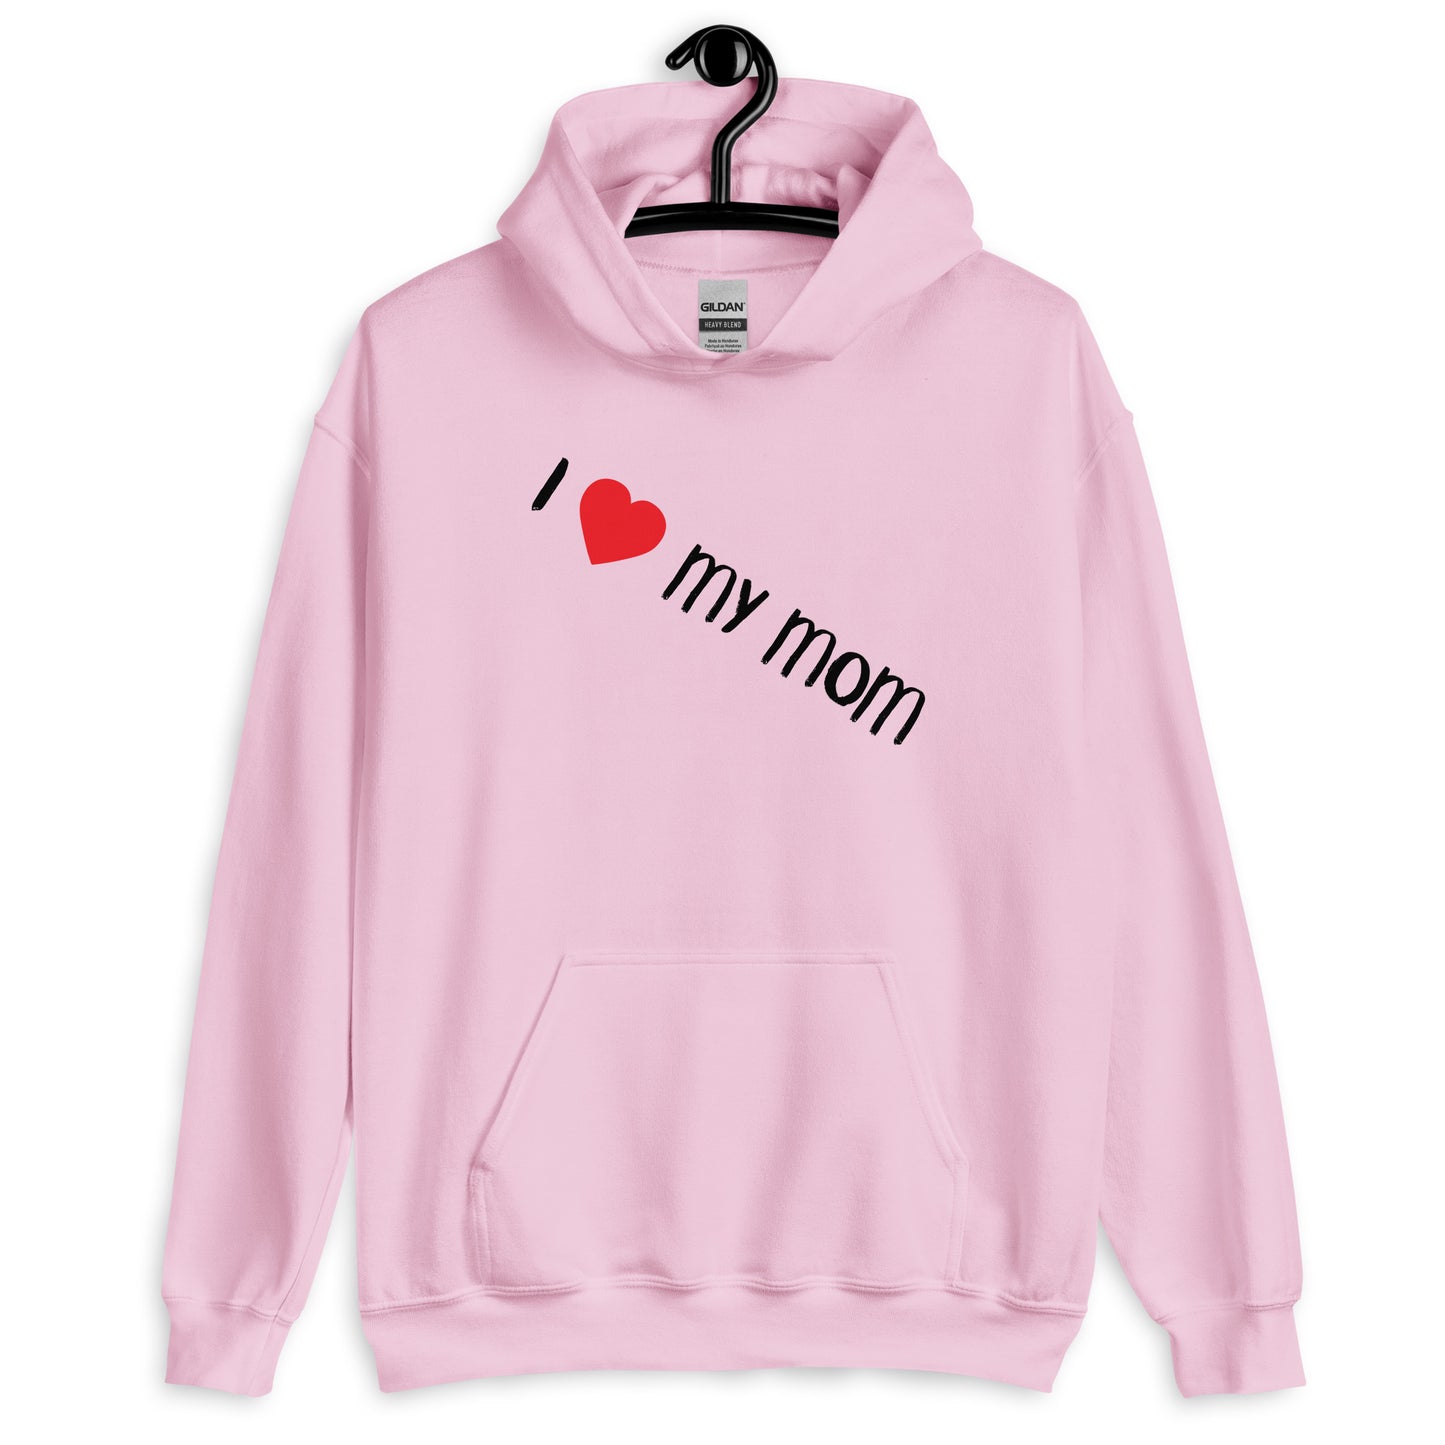 "<3 my mom" hoodie